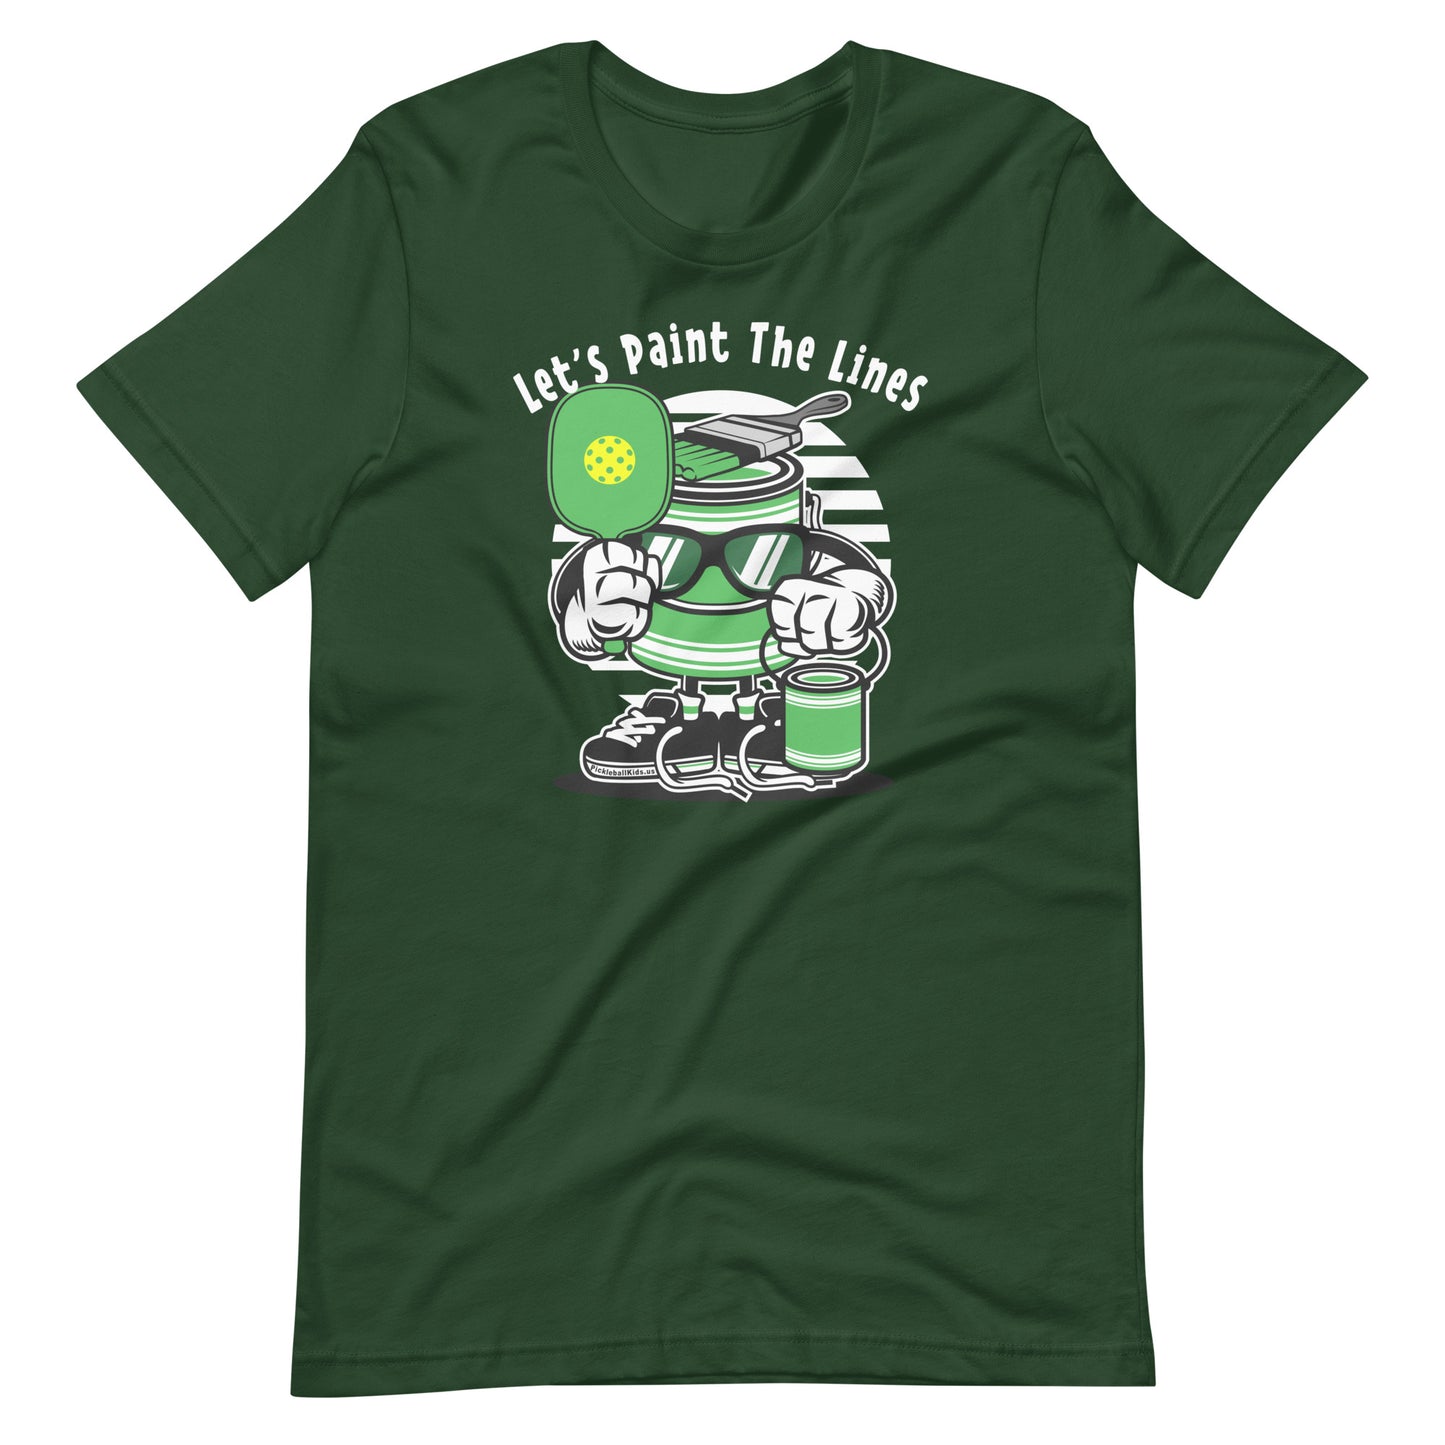 Retro - Vintage Fun Pickleball "Let's Paint The Lines" Unisex T-Shirt